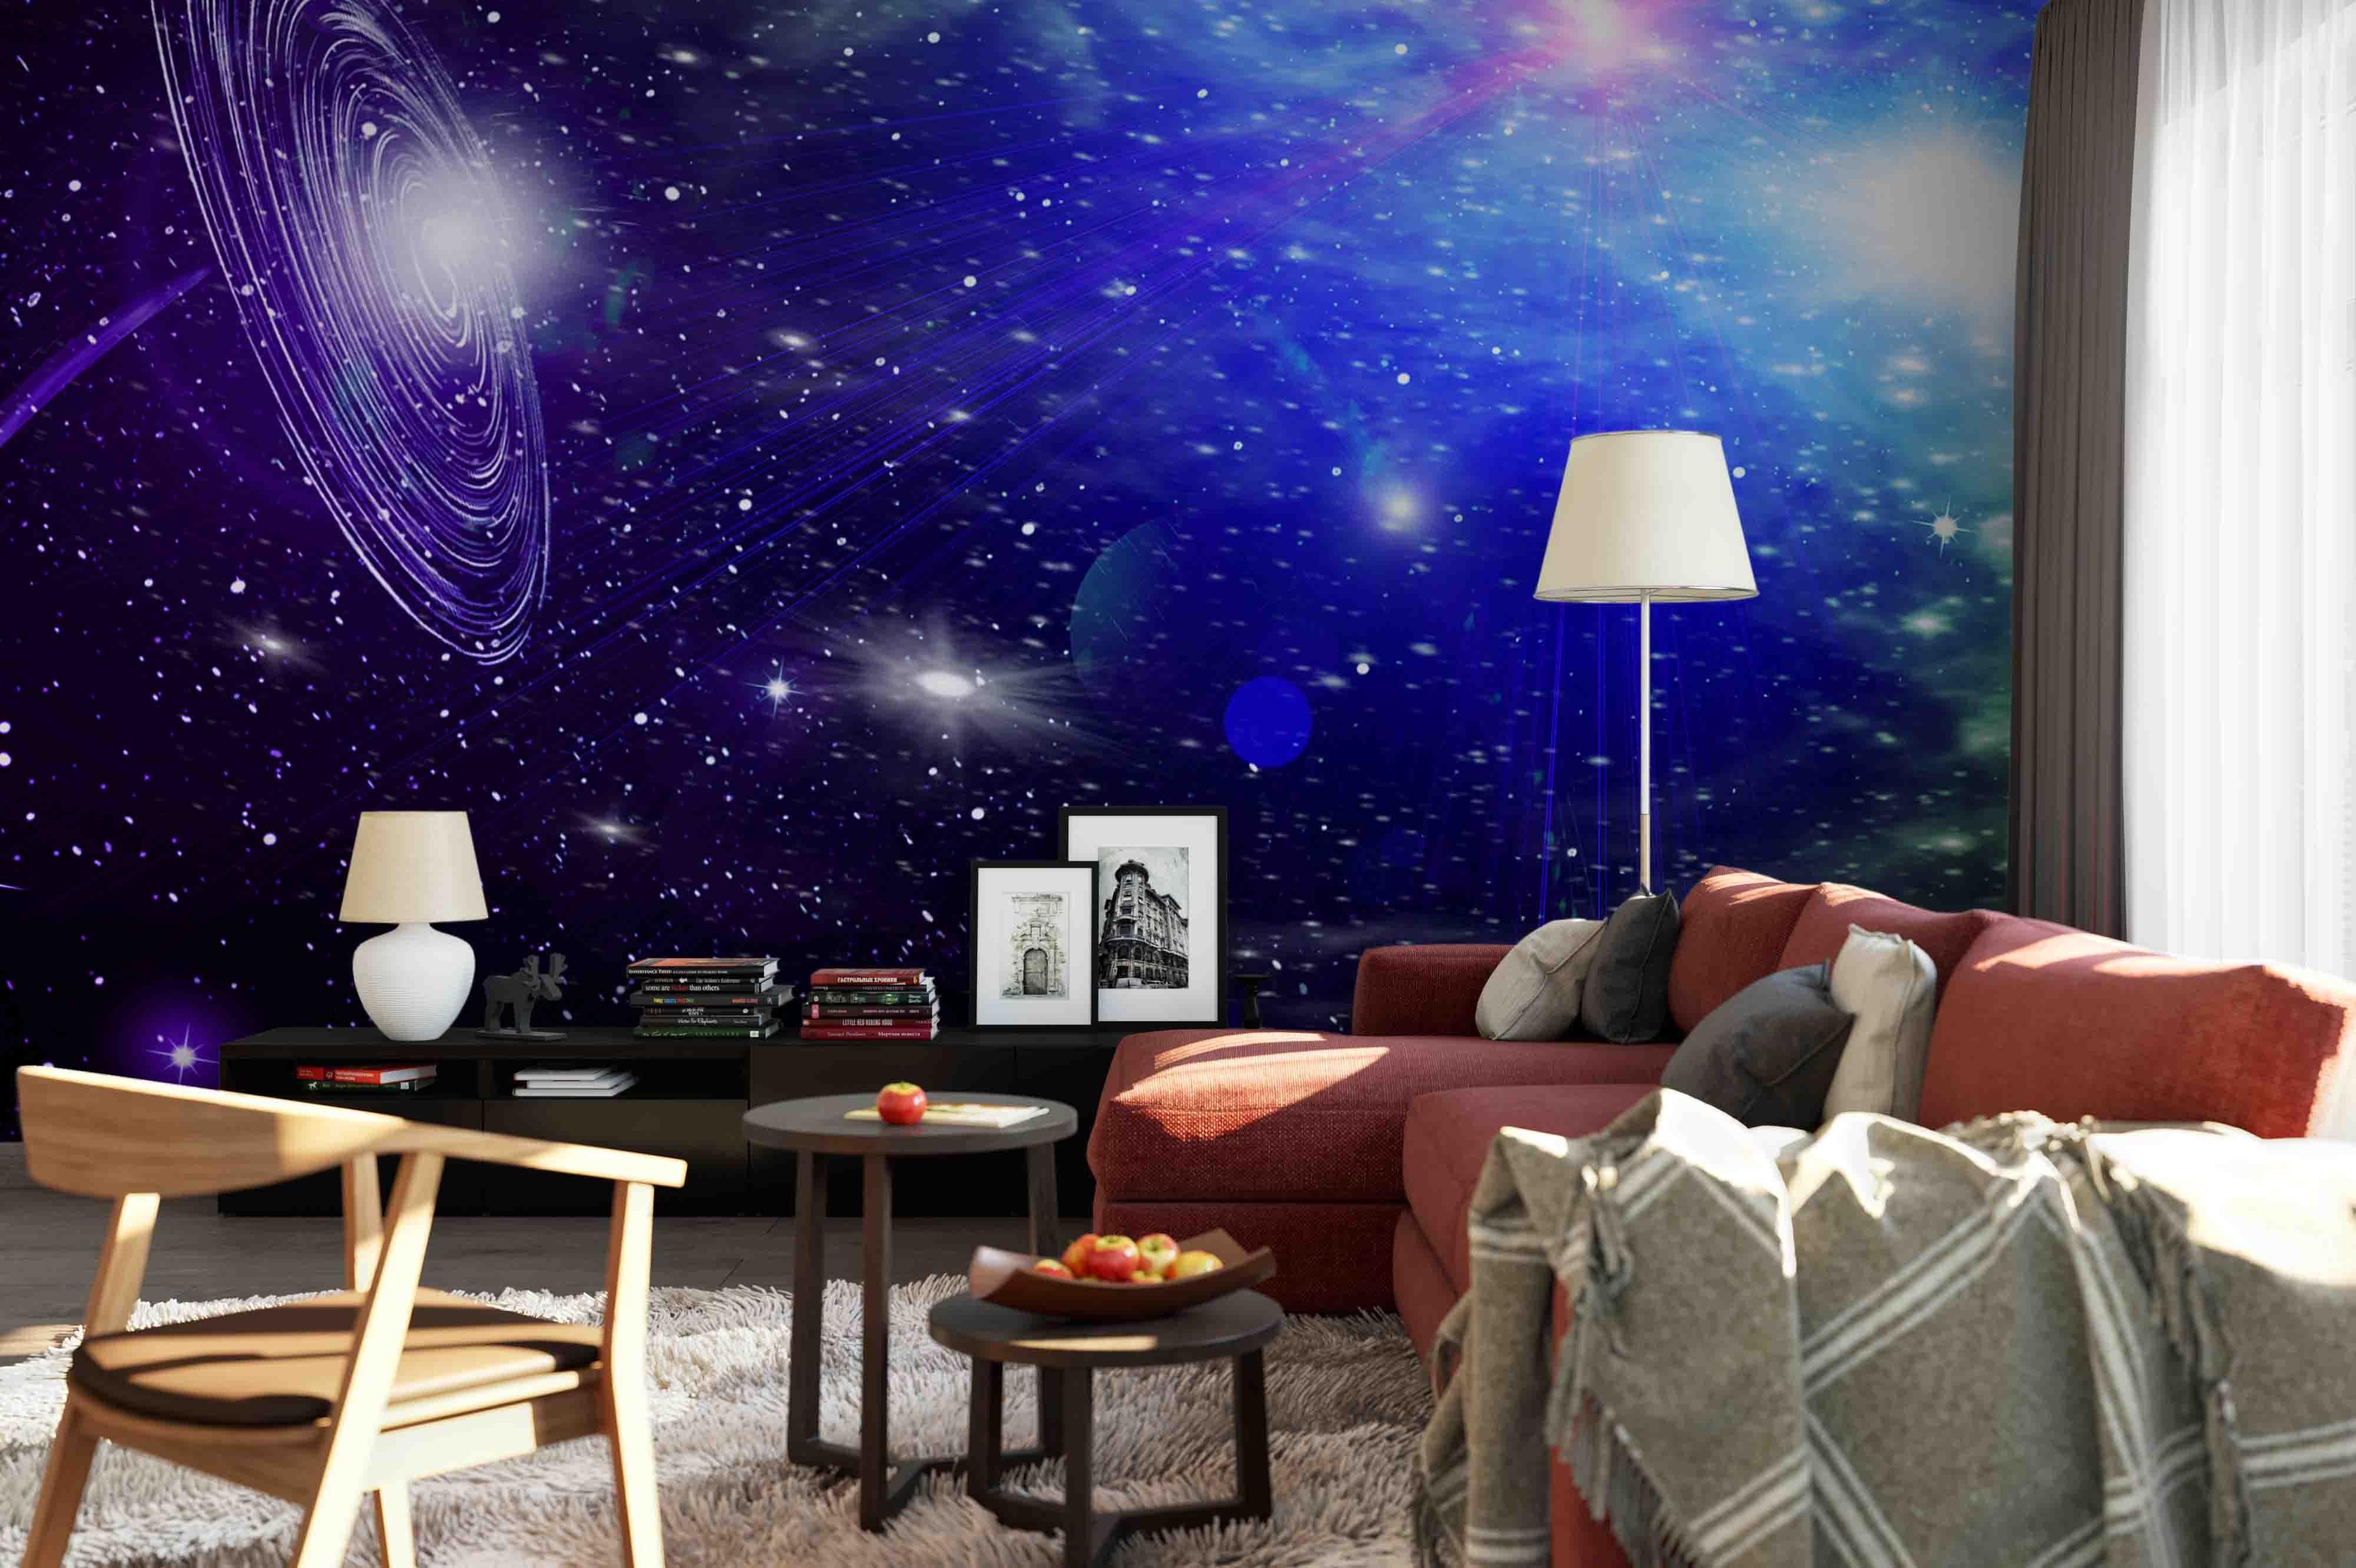 3D Universe Planet Galaxy Wall Mural Wallpaper 254- Jess Art Decoration